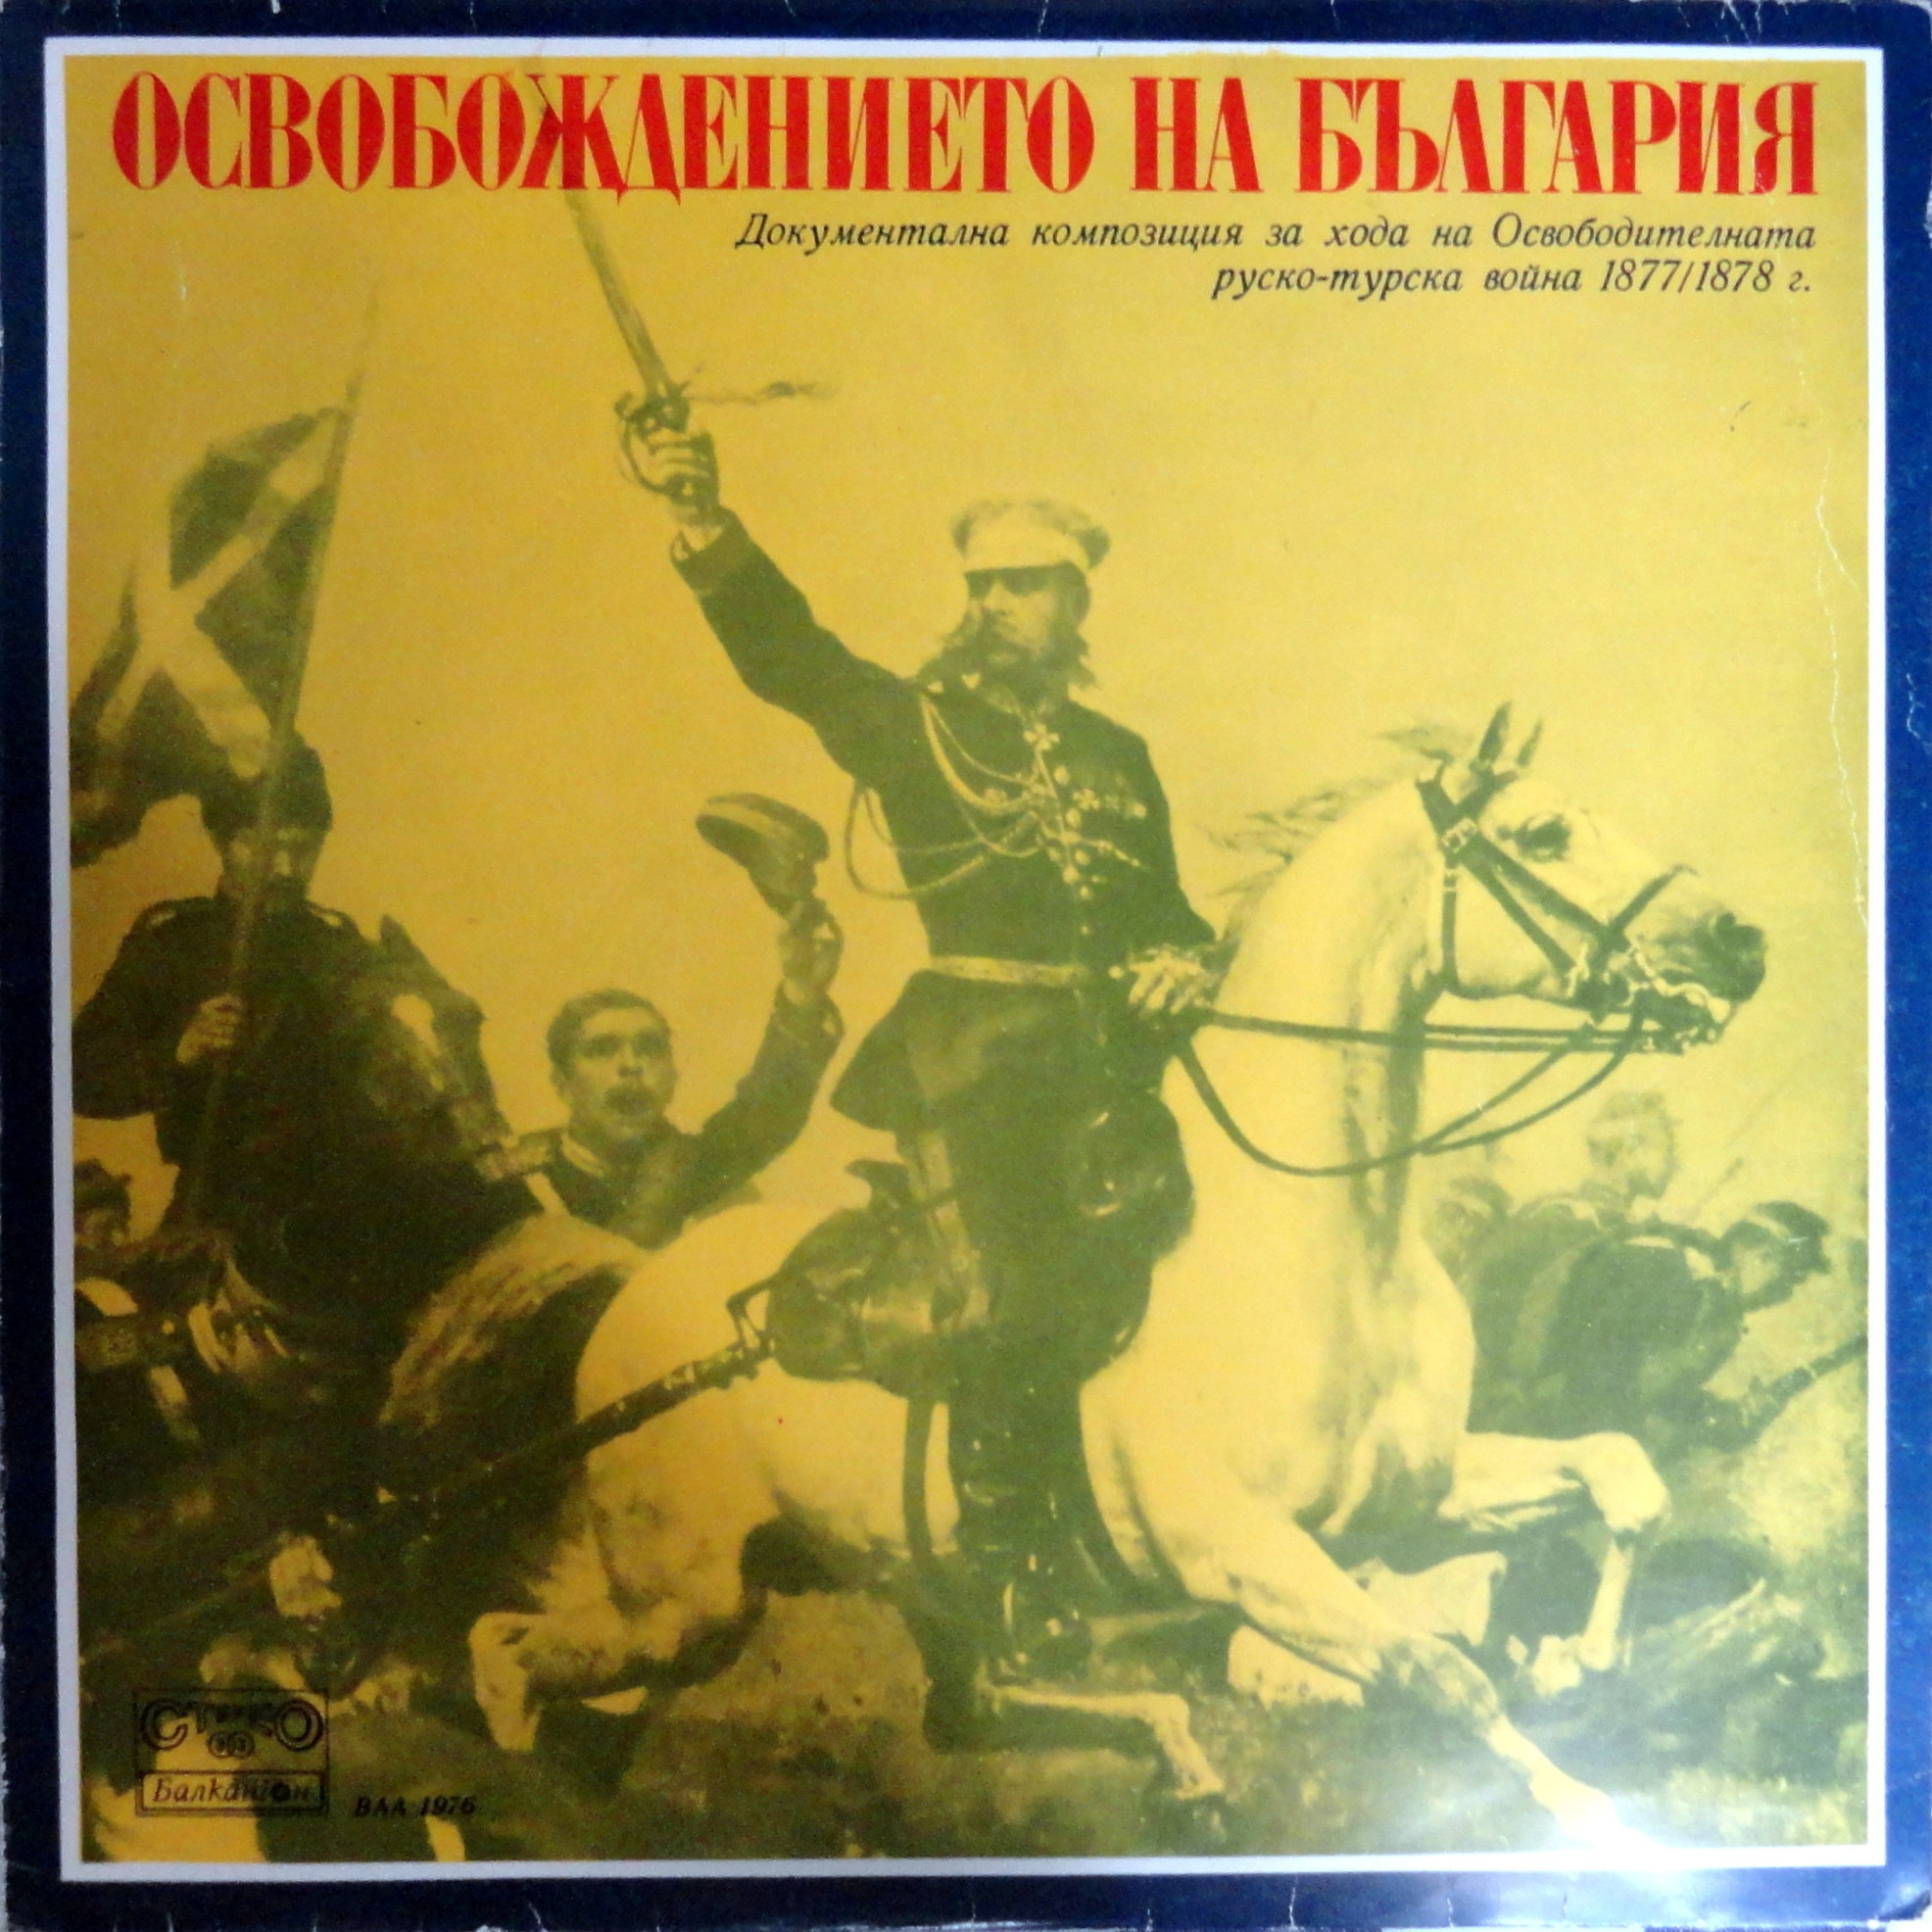 Освобождението на България, документална композиция за хода на Освободителната руско-турска война 1877-1878 г.